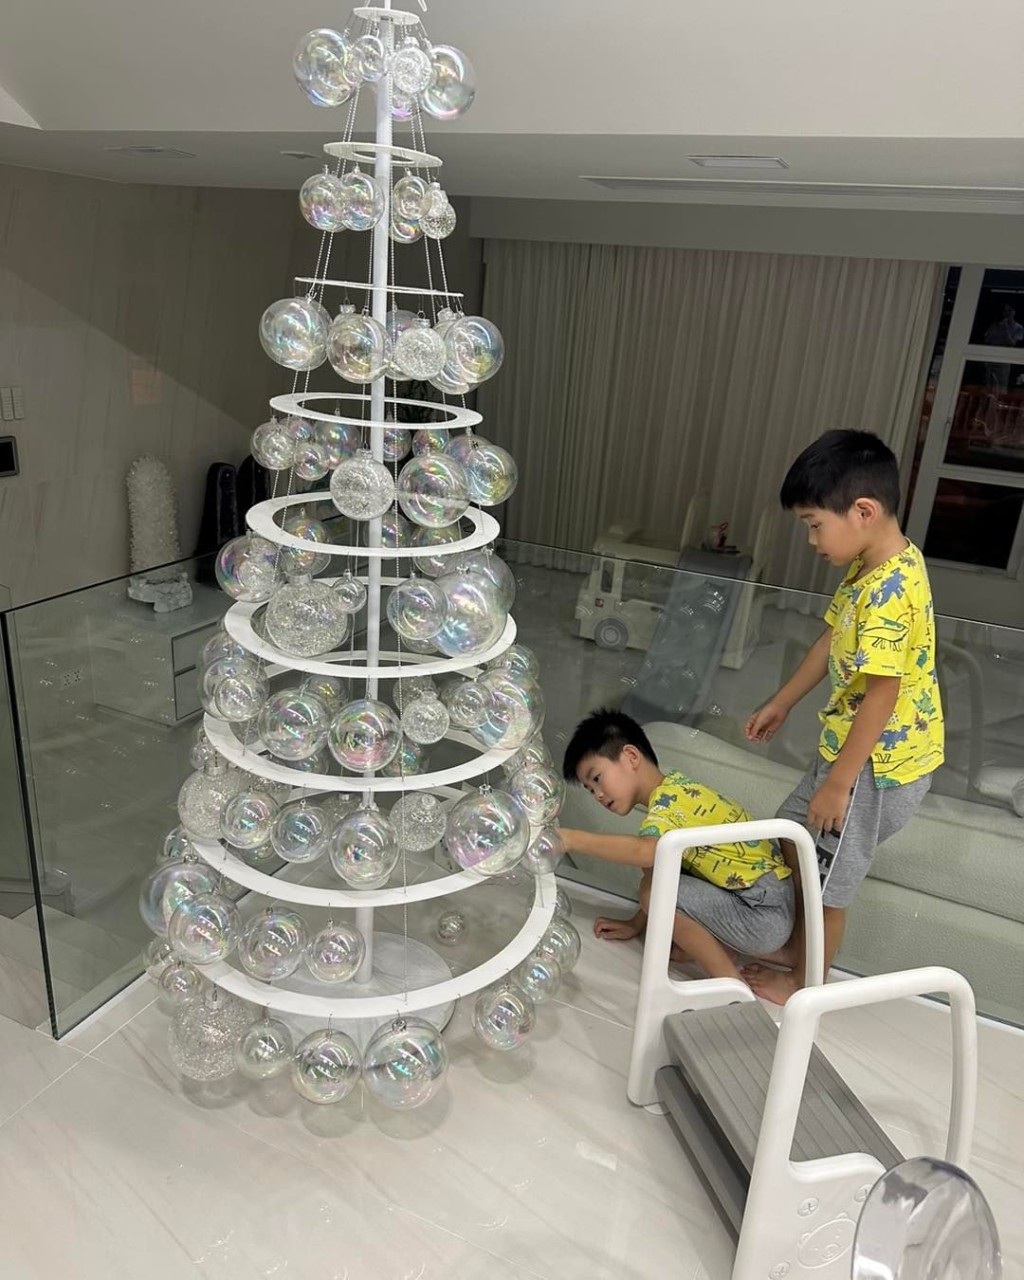 叶翠翠昨晚分享三个孩子在家中合力砌巨型圣诞树。